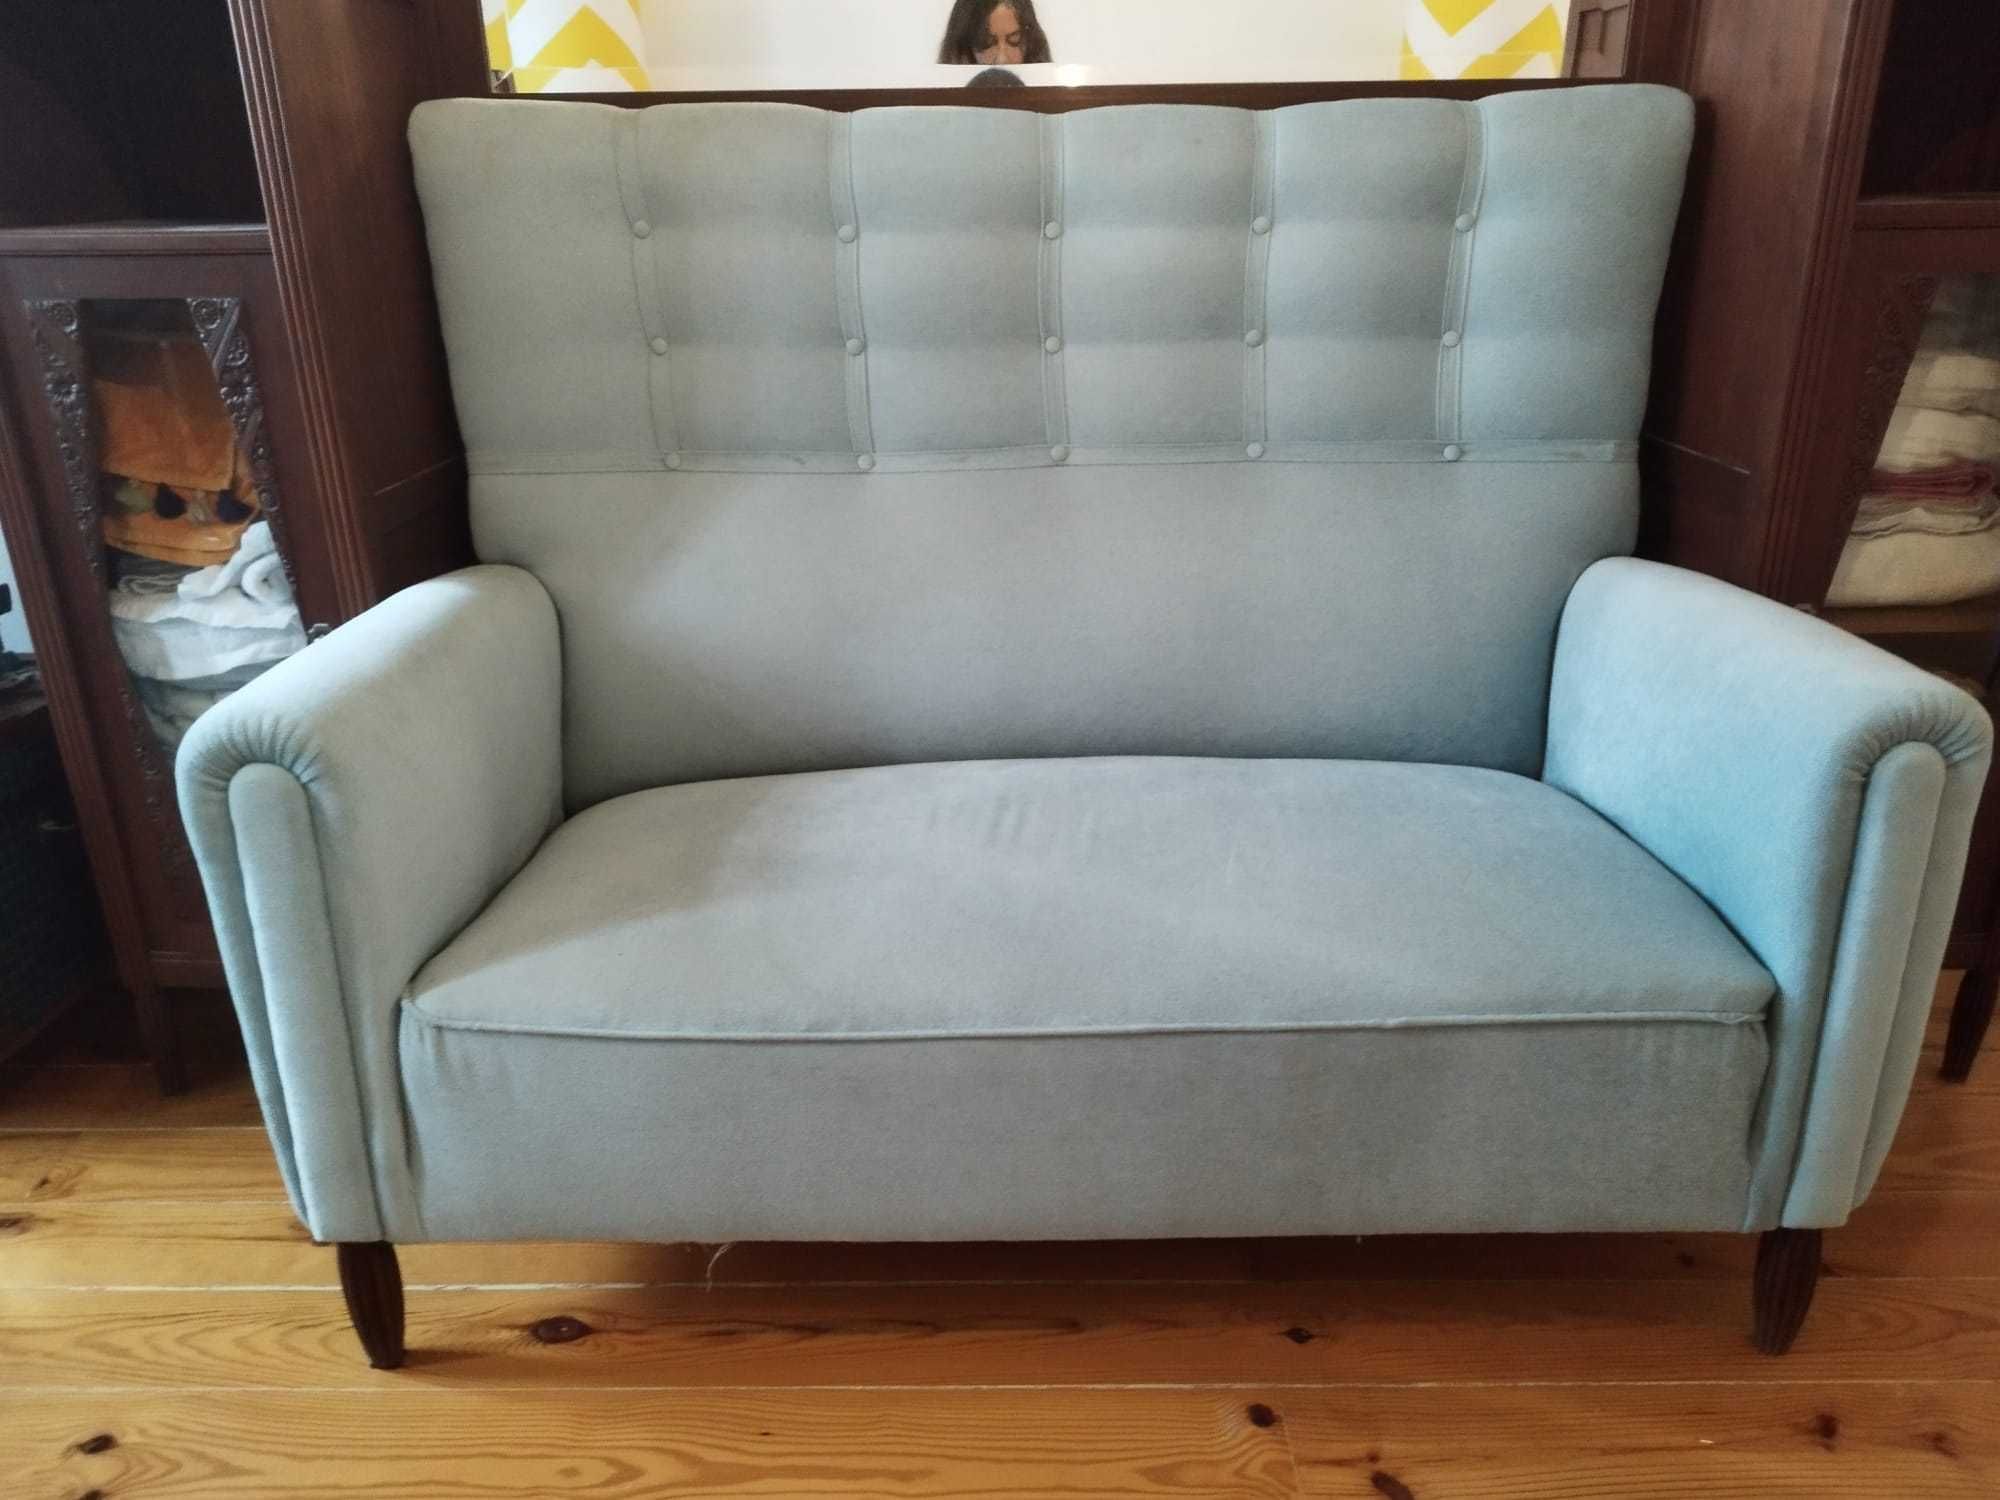 Móvel sofá vintage, azul claro